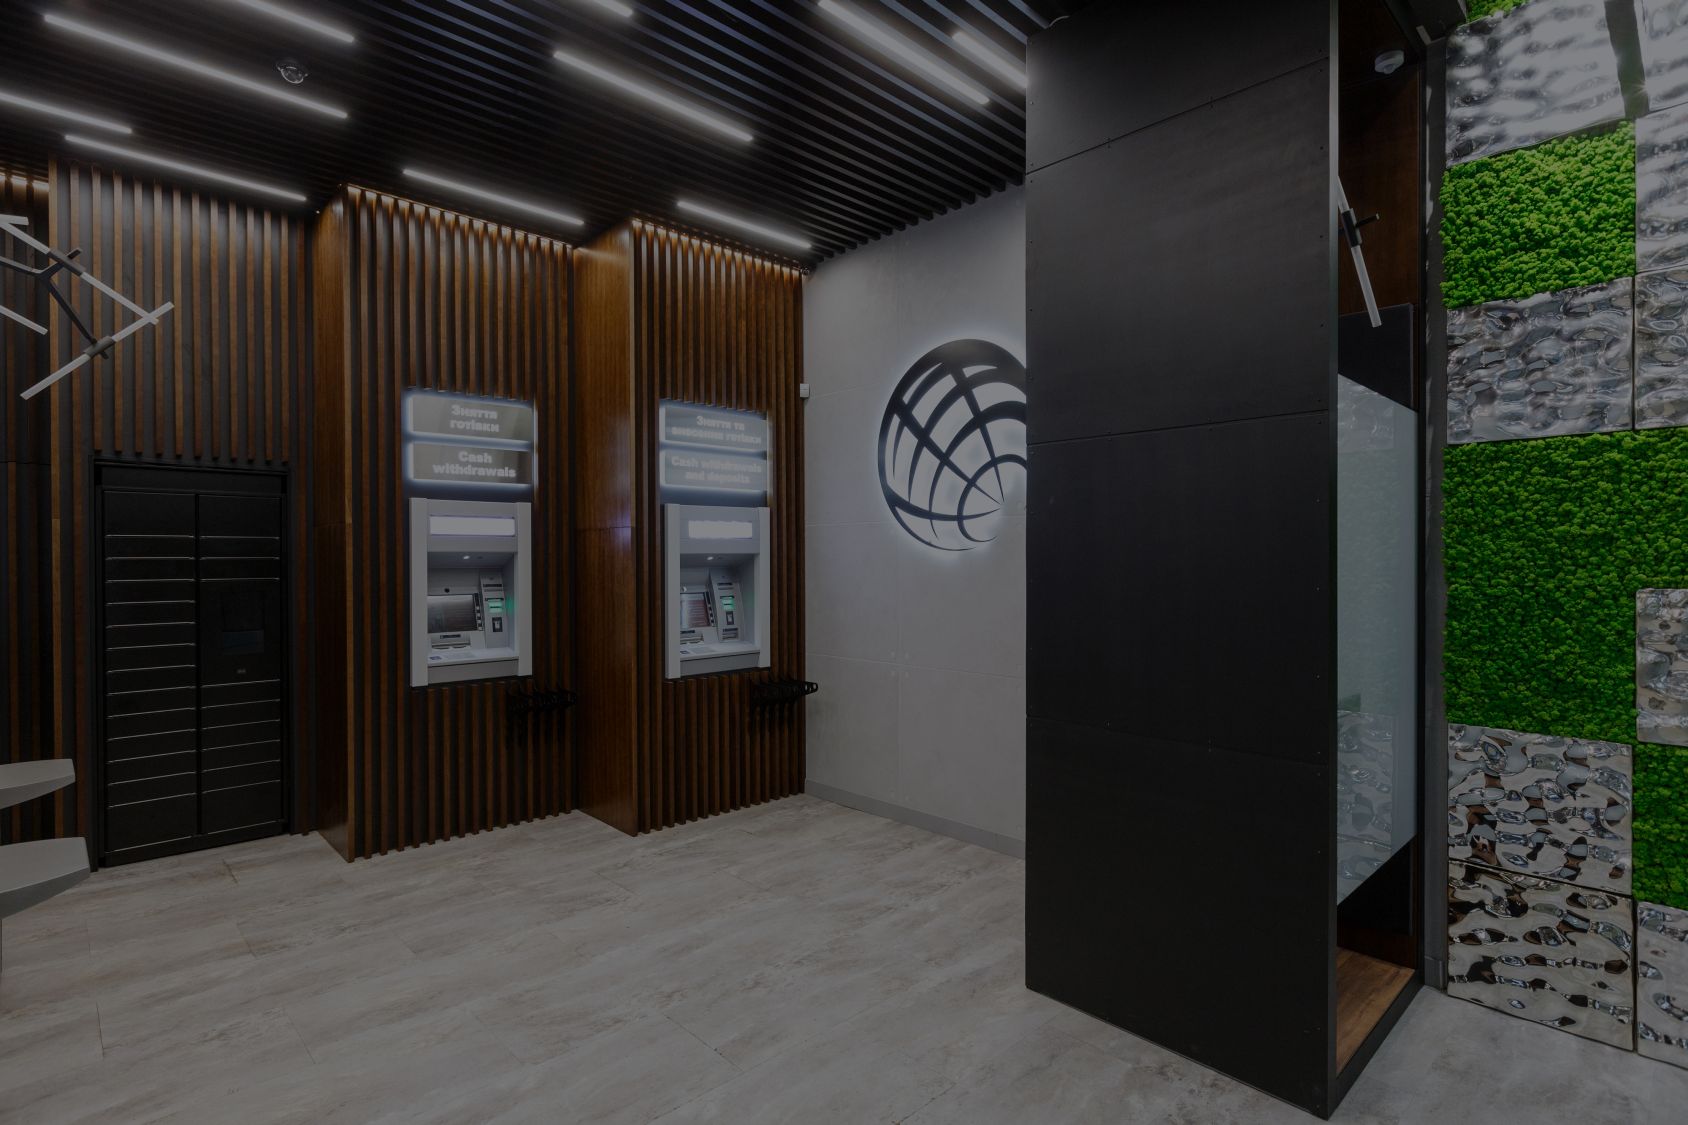 ПроКредит Банк відкриває нові зони самообслуговування у ТРЦ м. Київ: